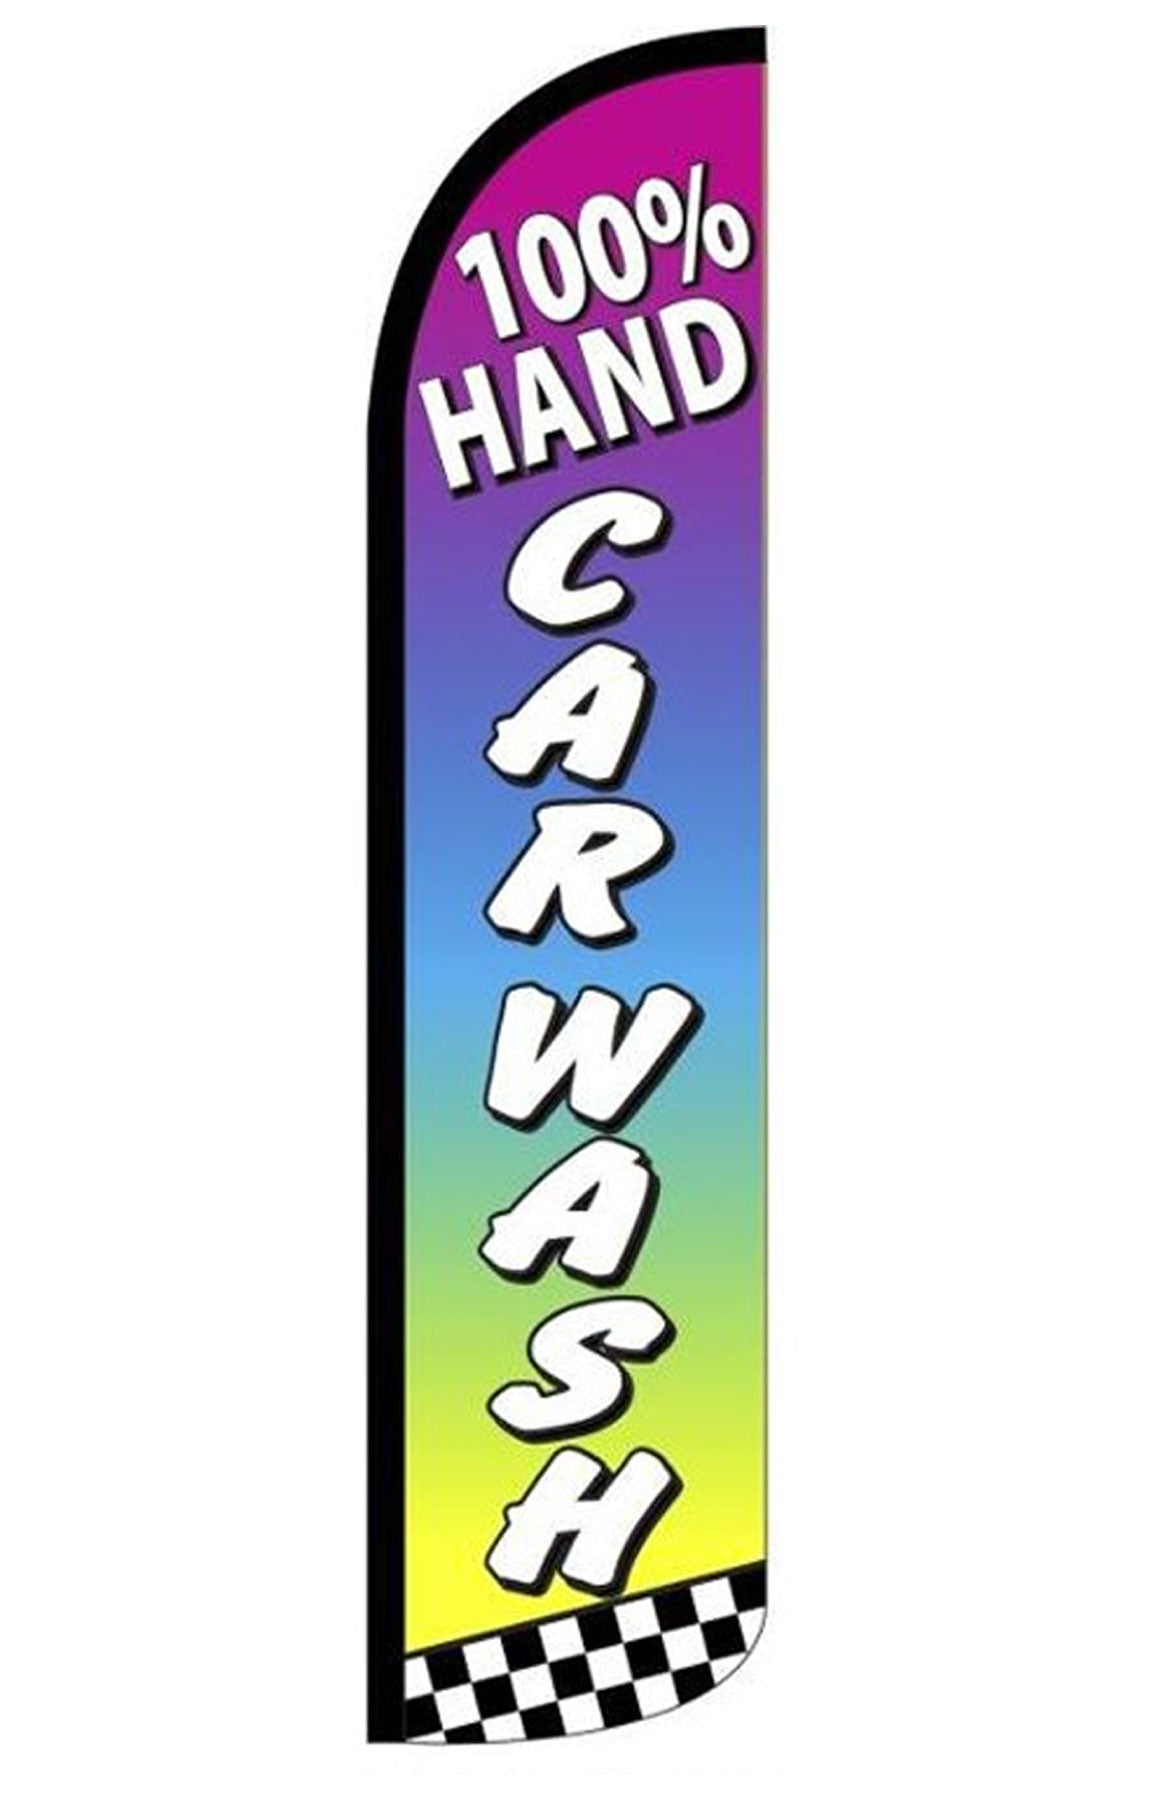 100% HAND CARWASH